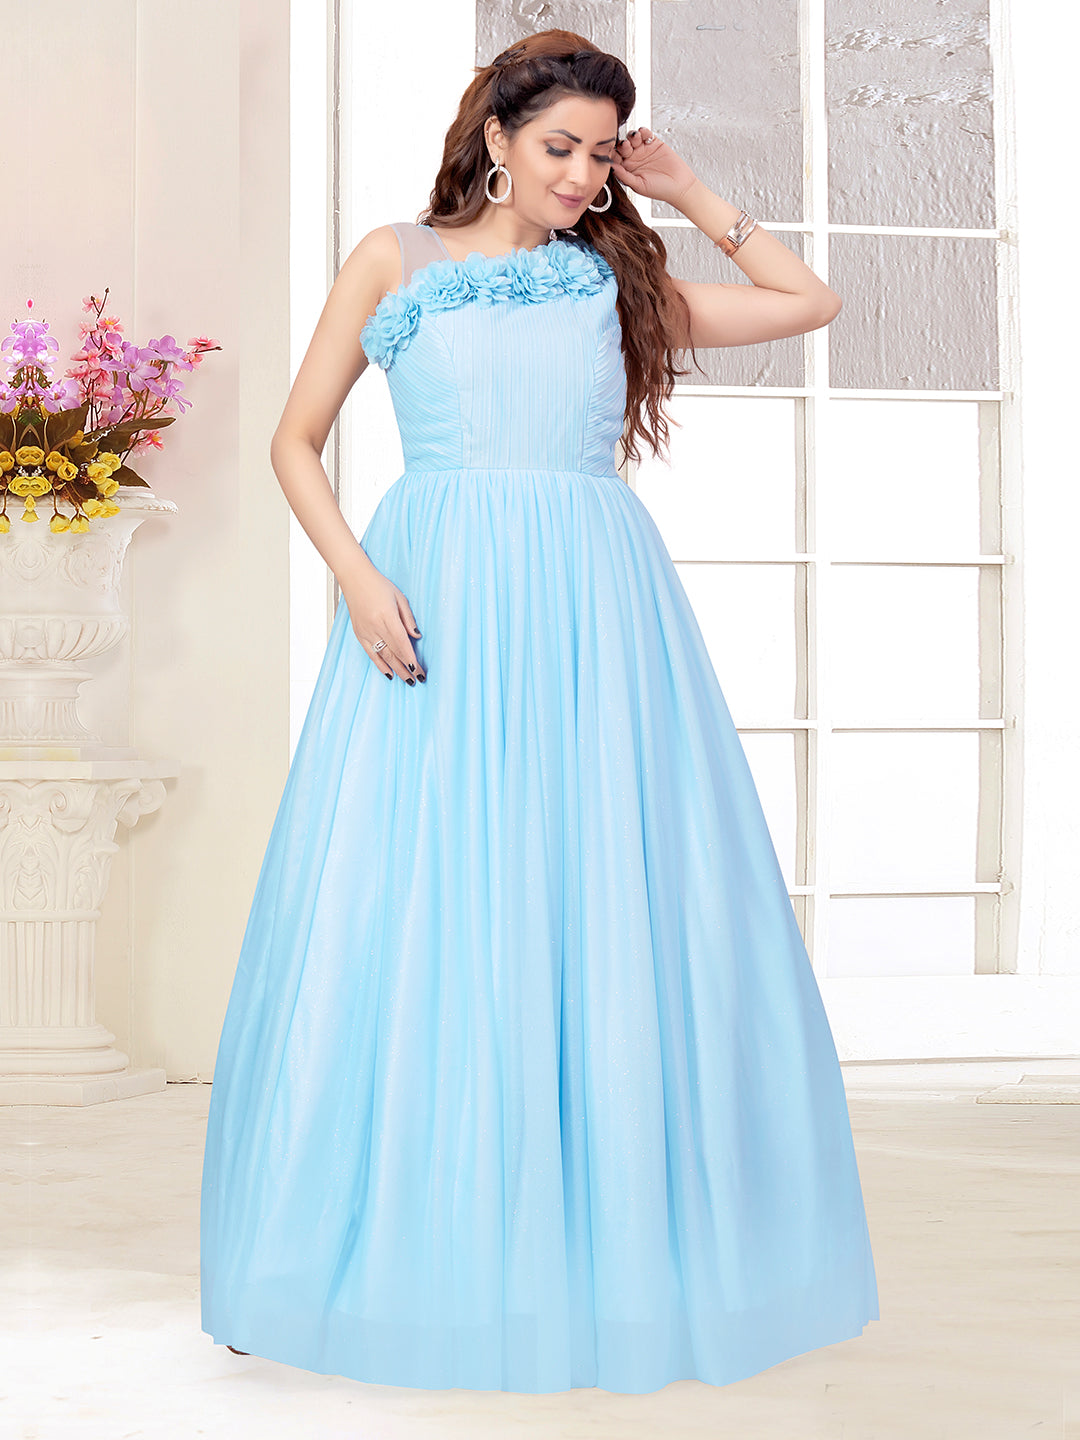 Floral Sky Blue Knee Length Dress - 2000-Sky Blue – TINY BABY INDIA